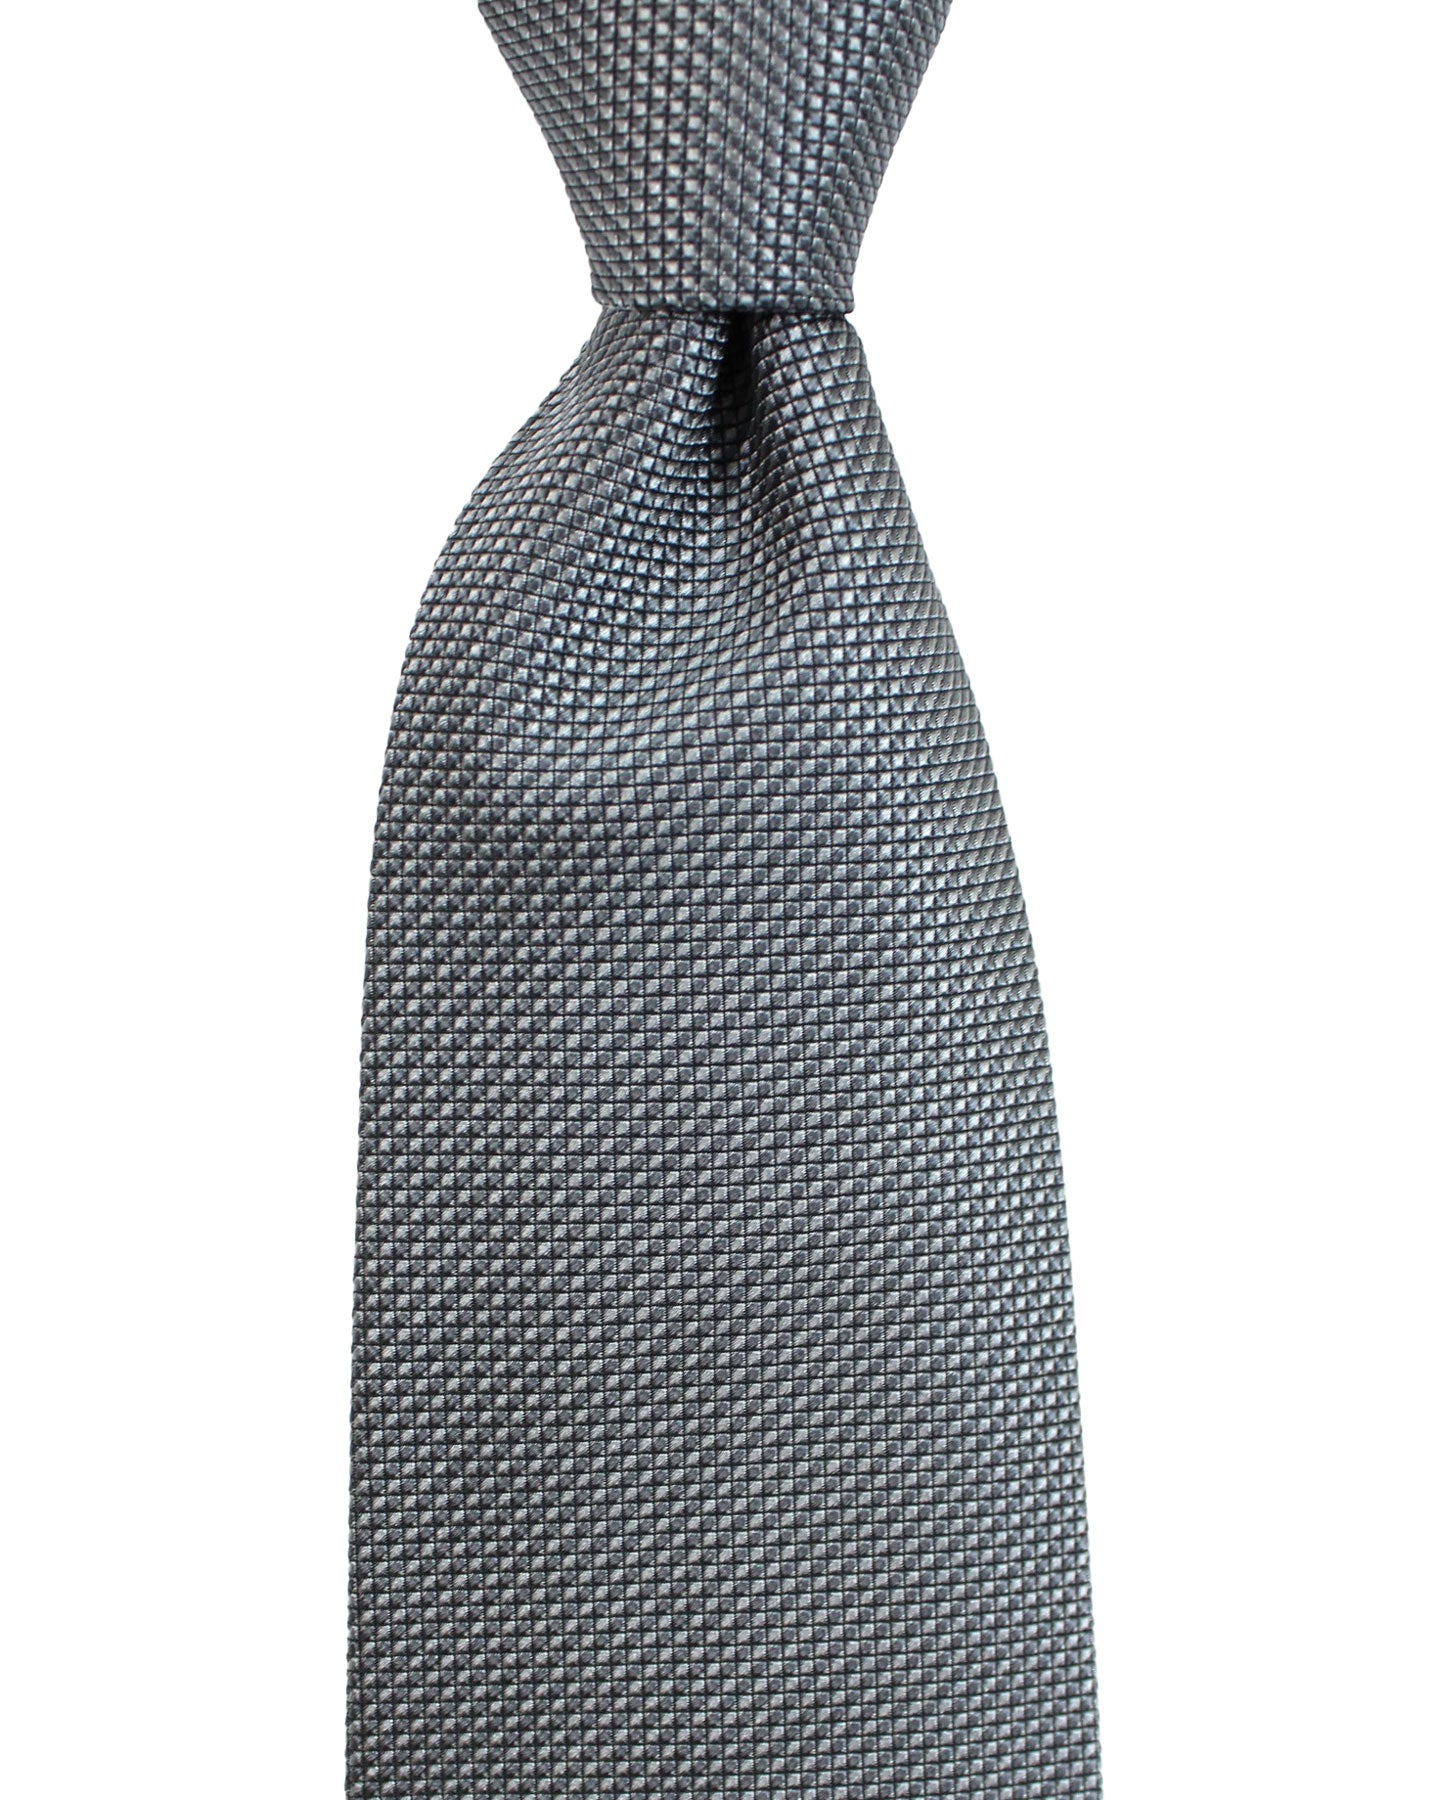 Luigi Borrelli Silk Tie Charcoal Gray Micro Check Design